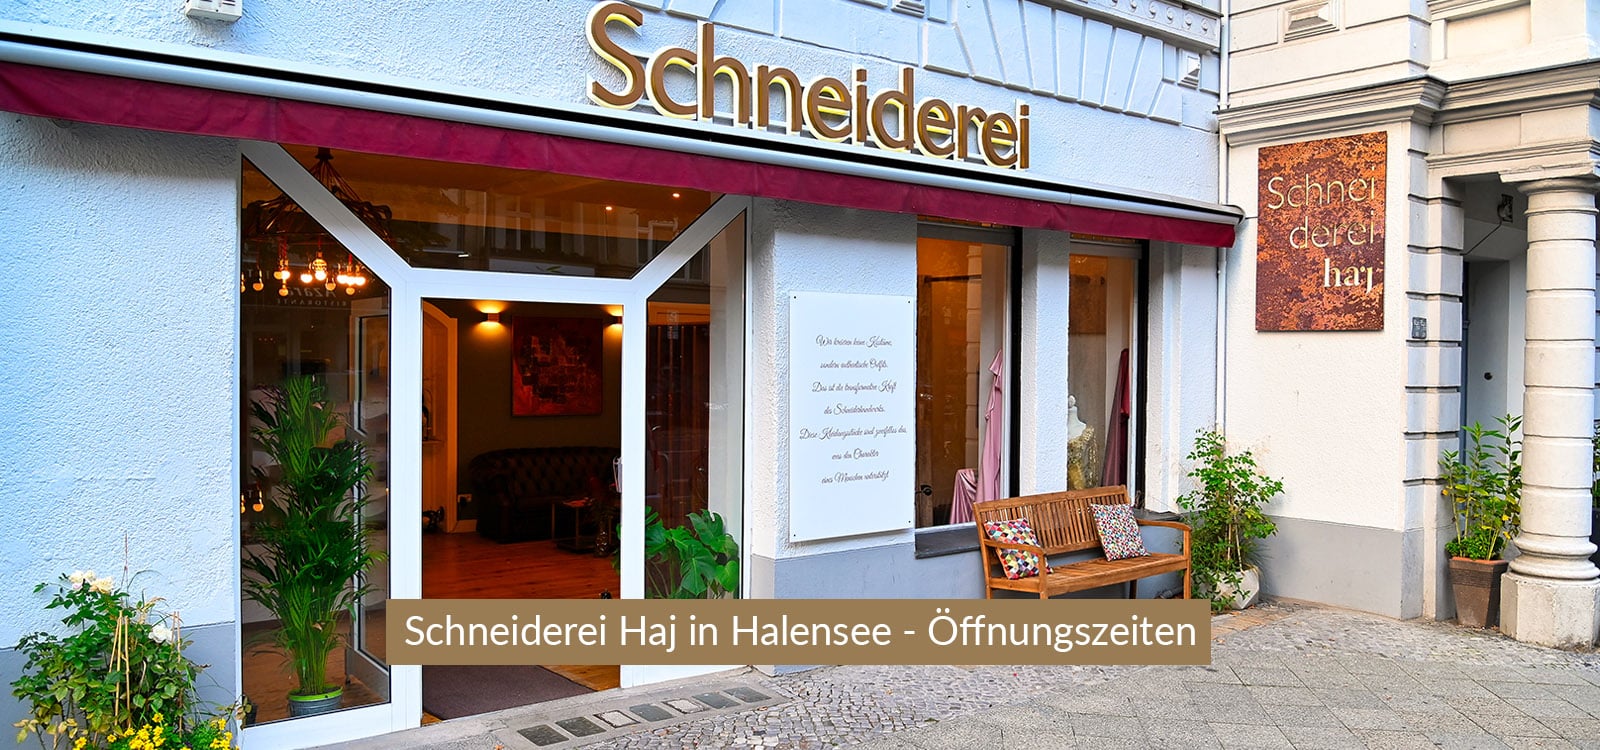 schneiderei-halensee-header-desktop-1600x750-oeffnungszeiten